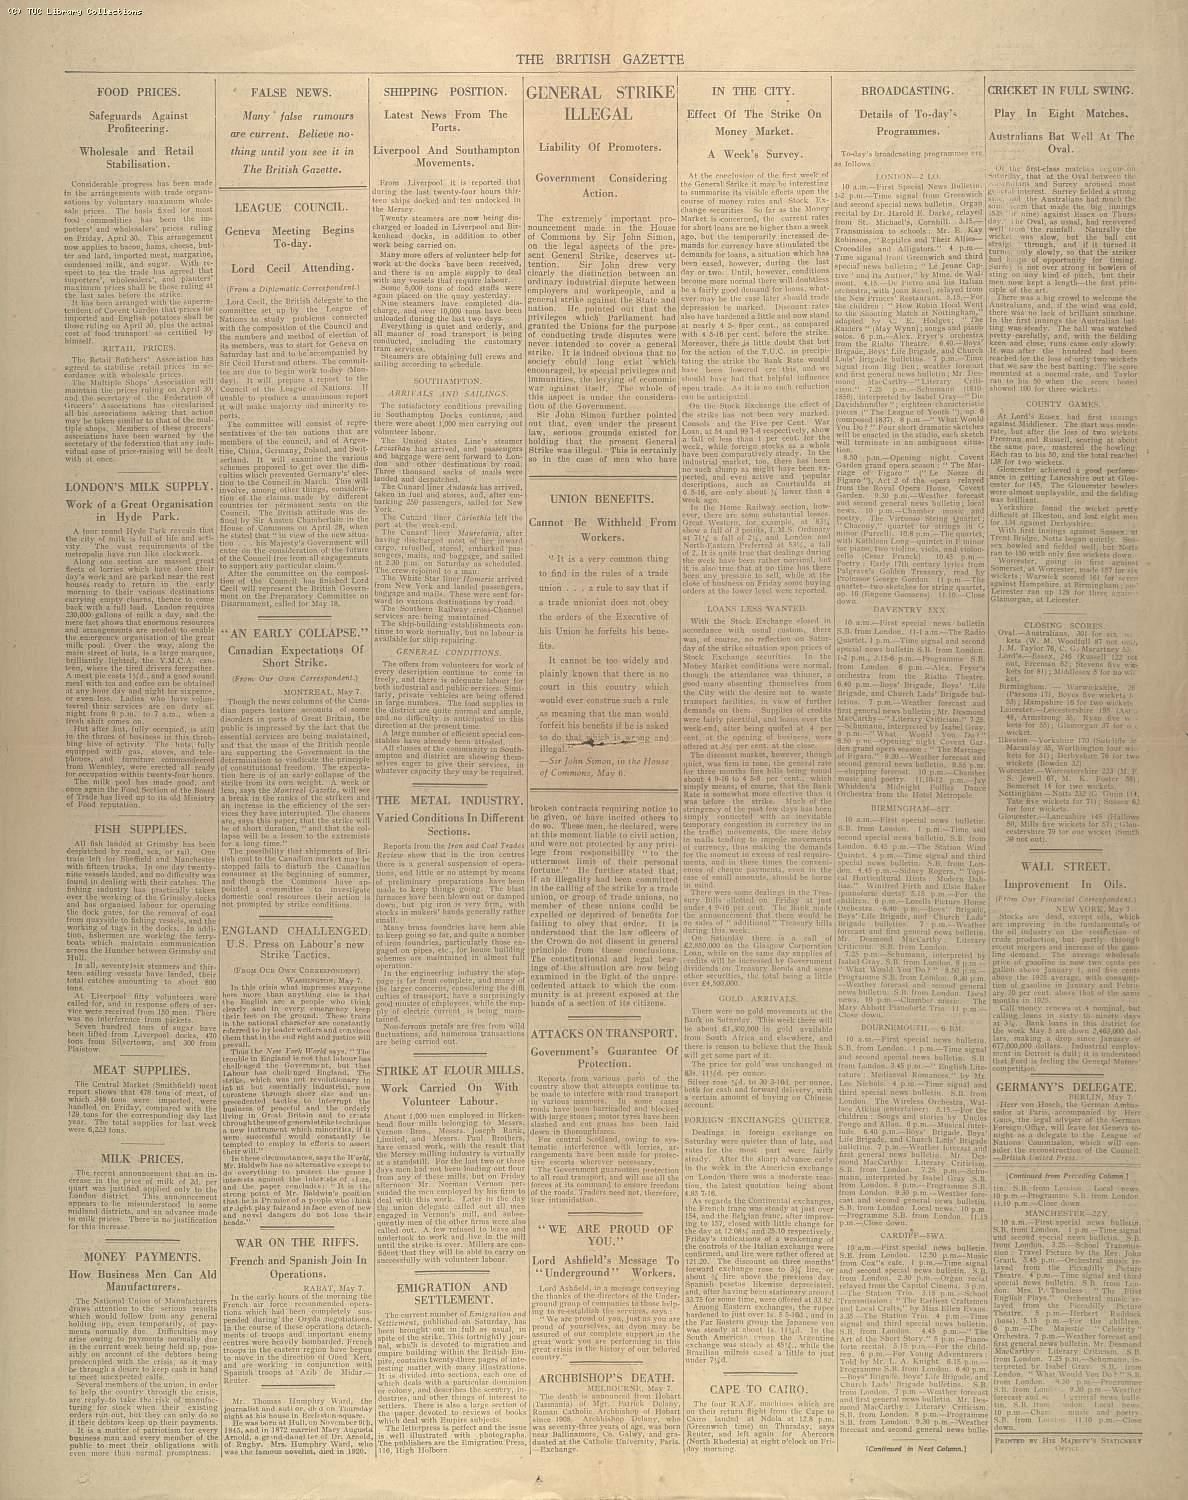 The British Gazette, 10 May 1926